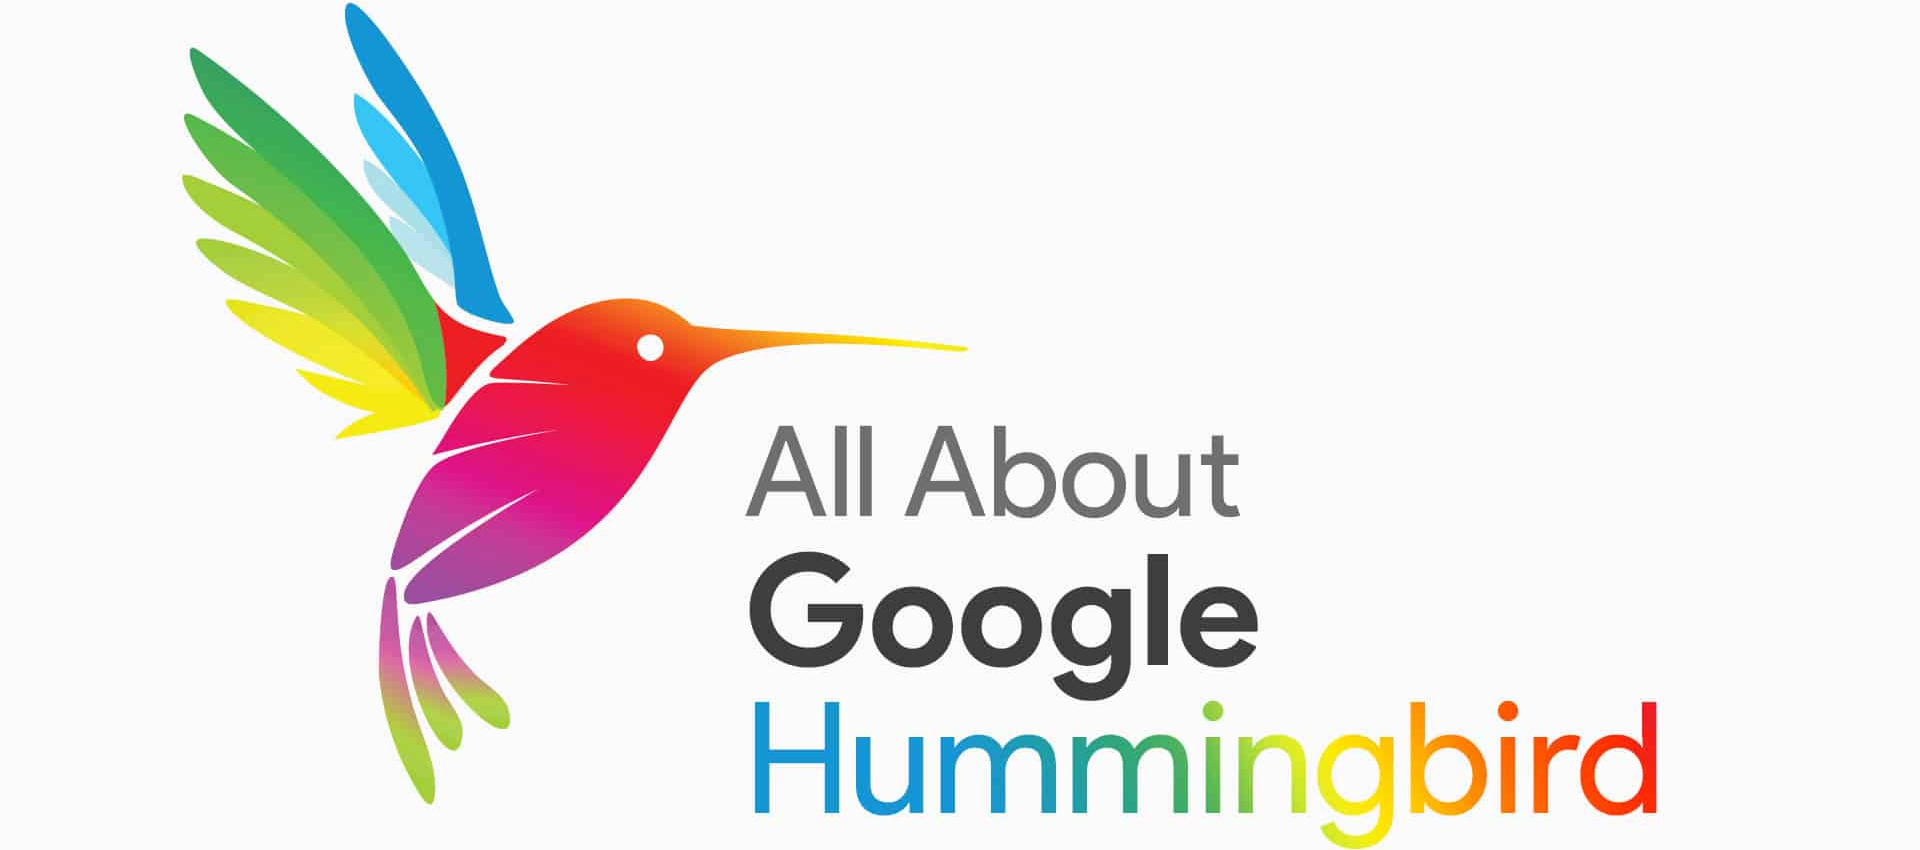 Google Hummingbird là gì?